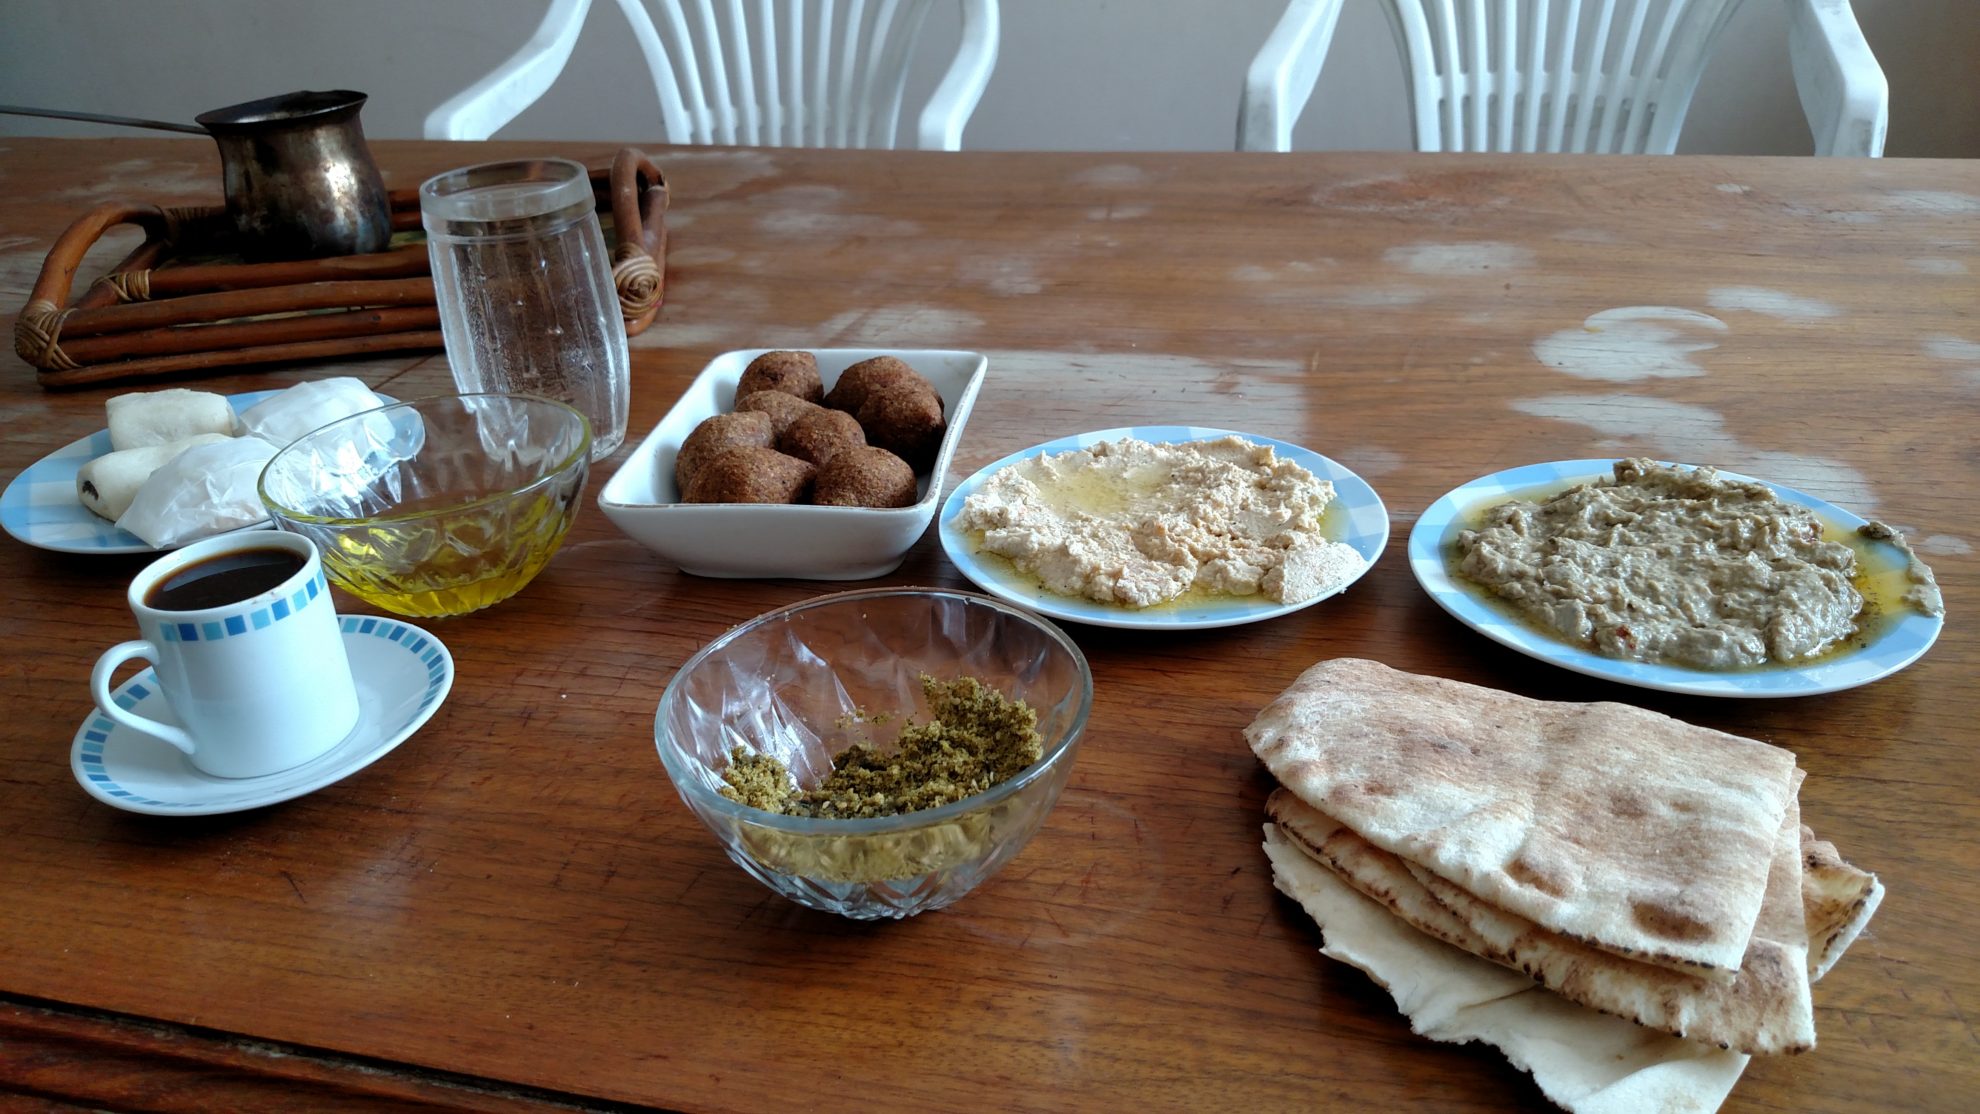 Café da manhã preparado à moda síria